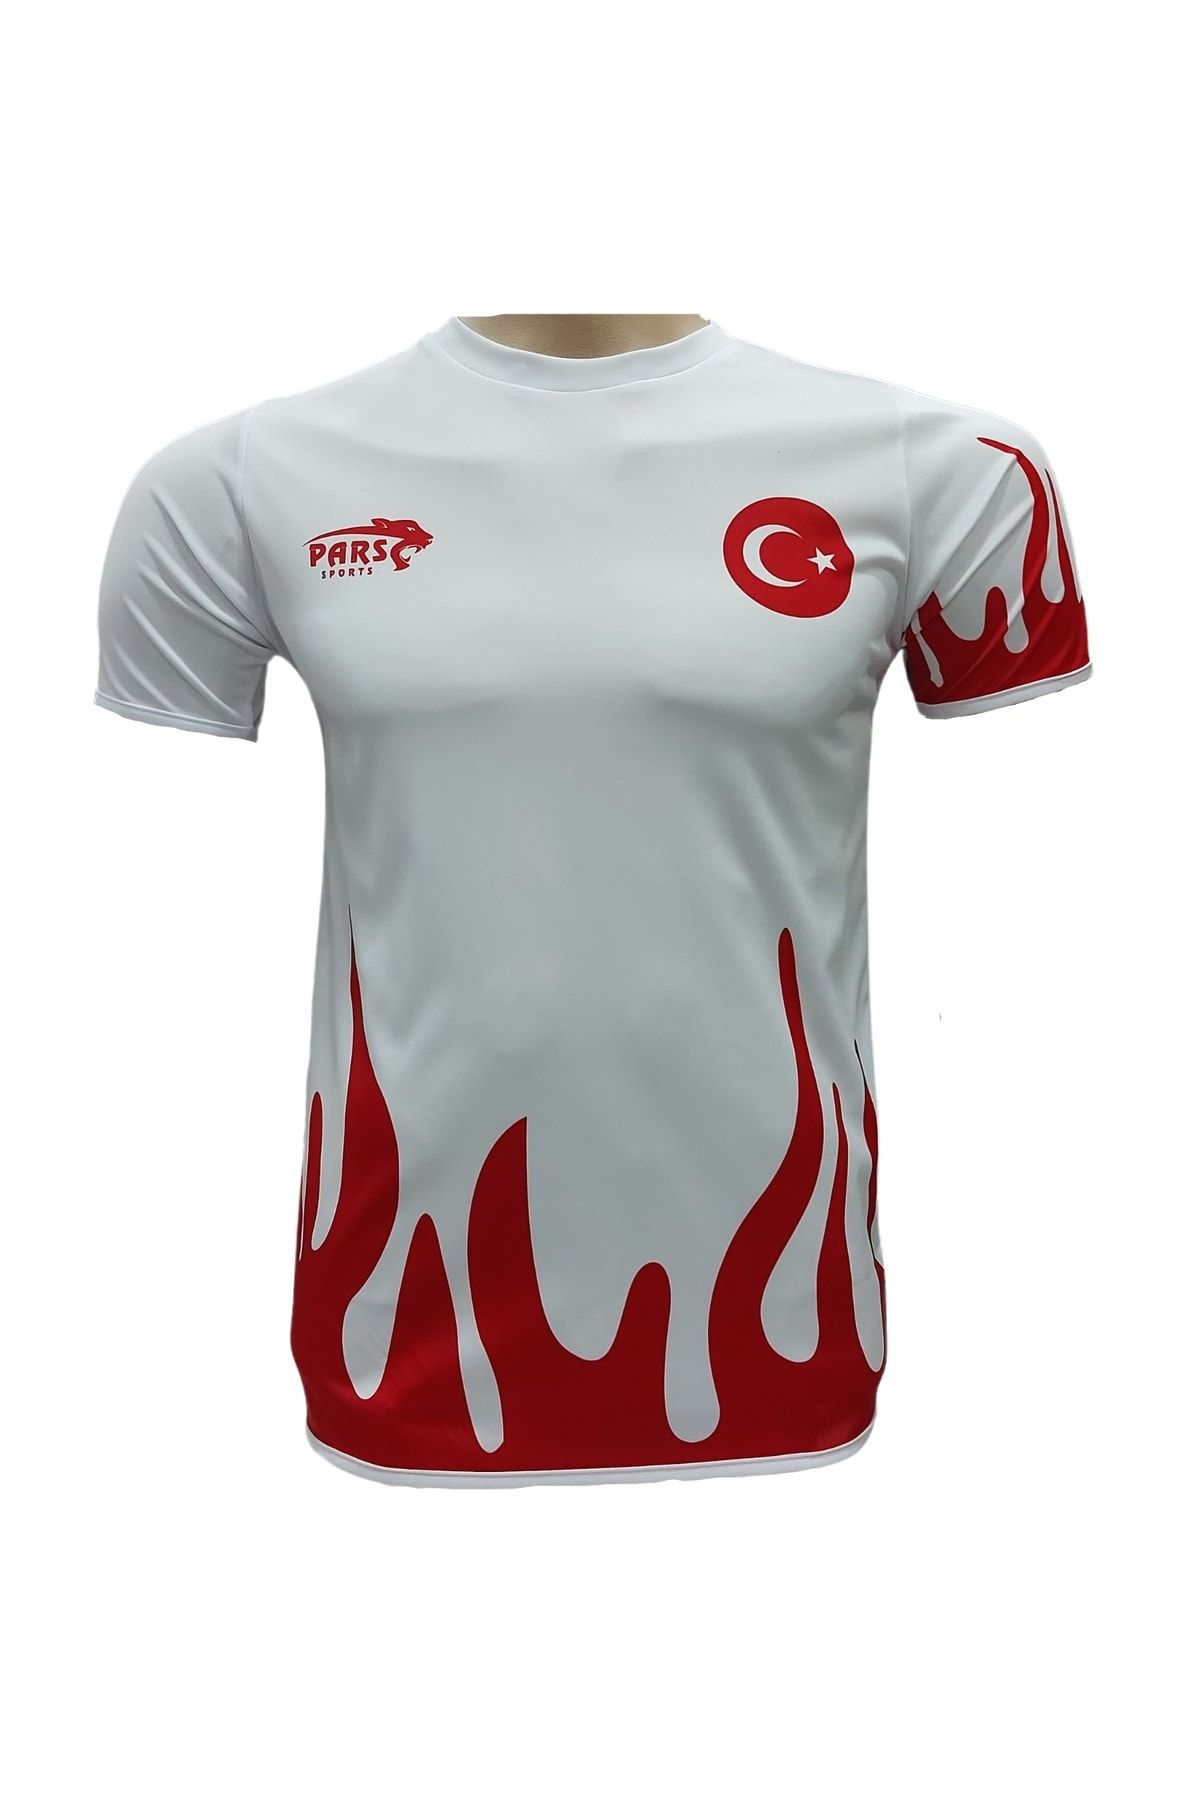 Pars Türkiye Milli Takım Tişörtü Milli Takım Forması